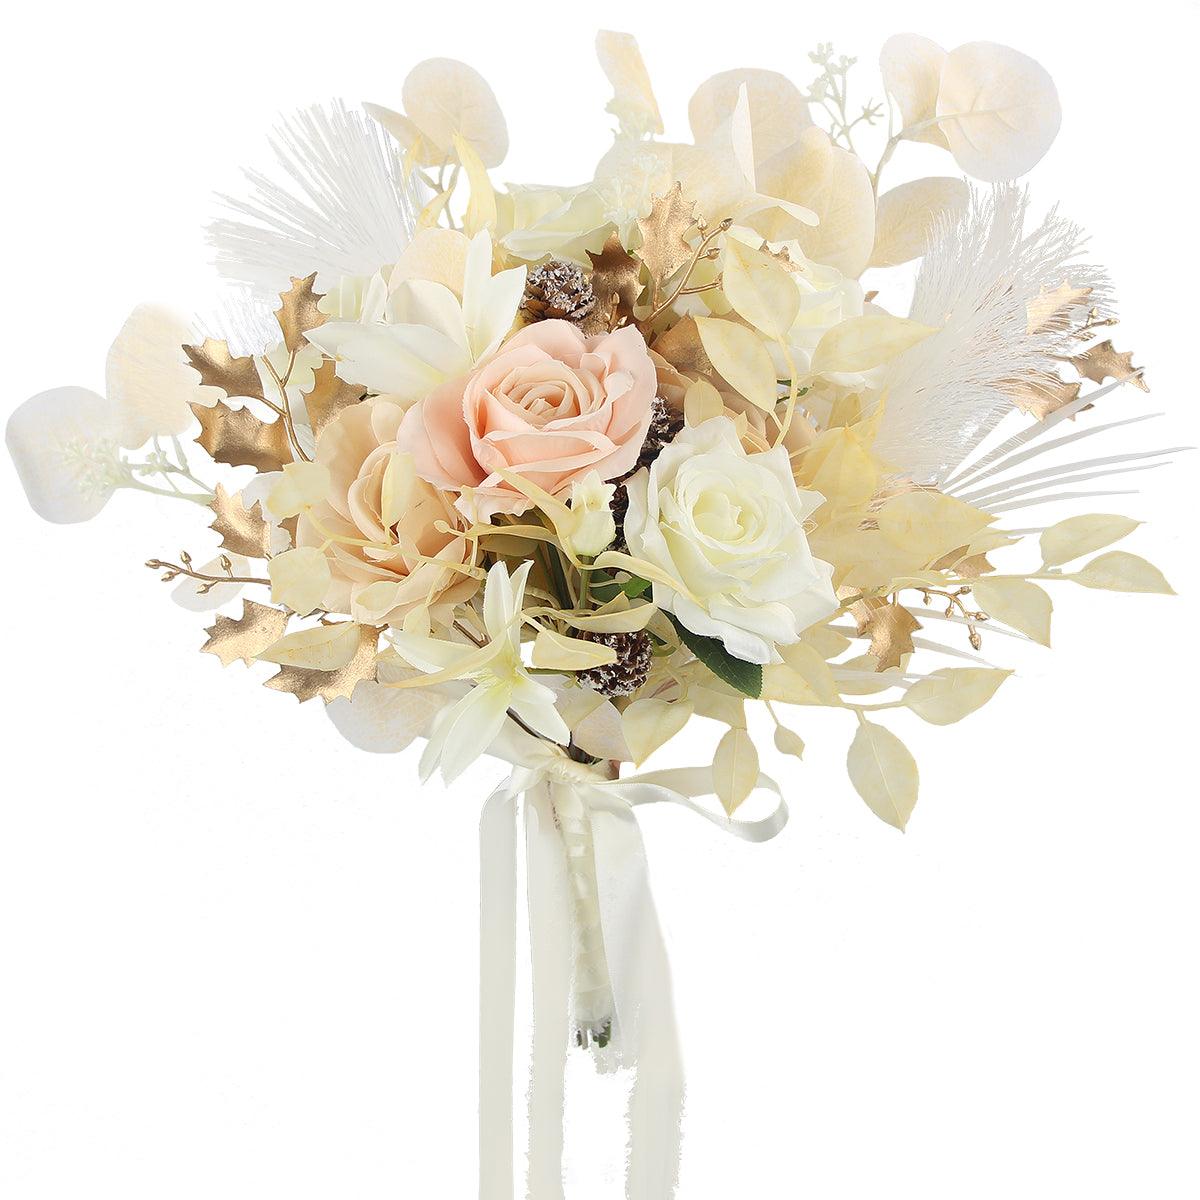 12.5 inch wide White & Beige Bridal Bouquet - Rinlong Flower